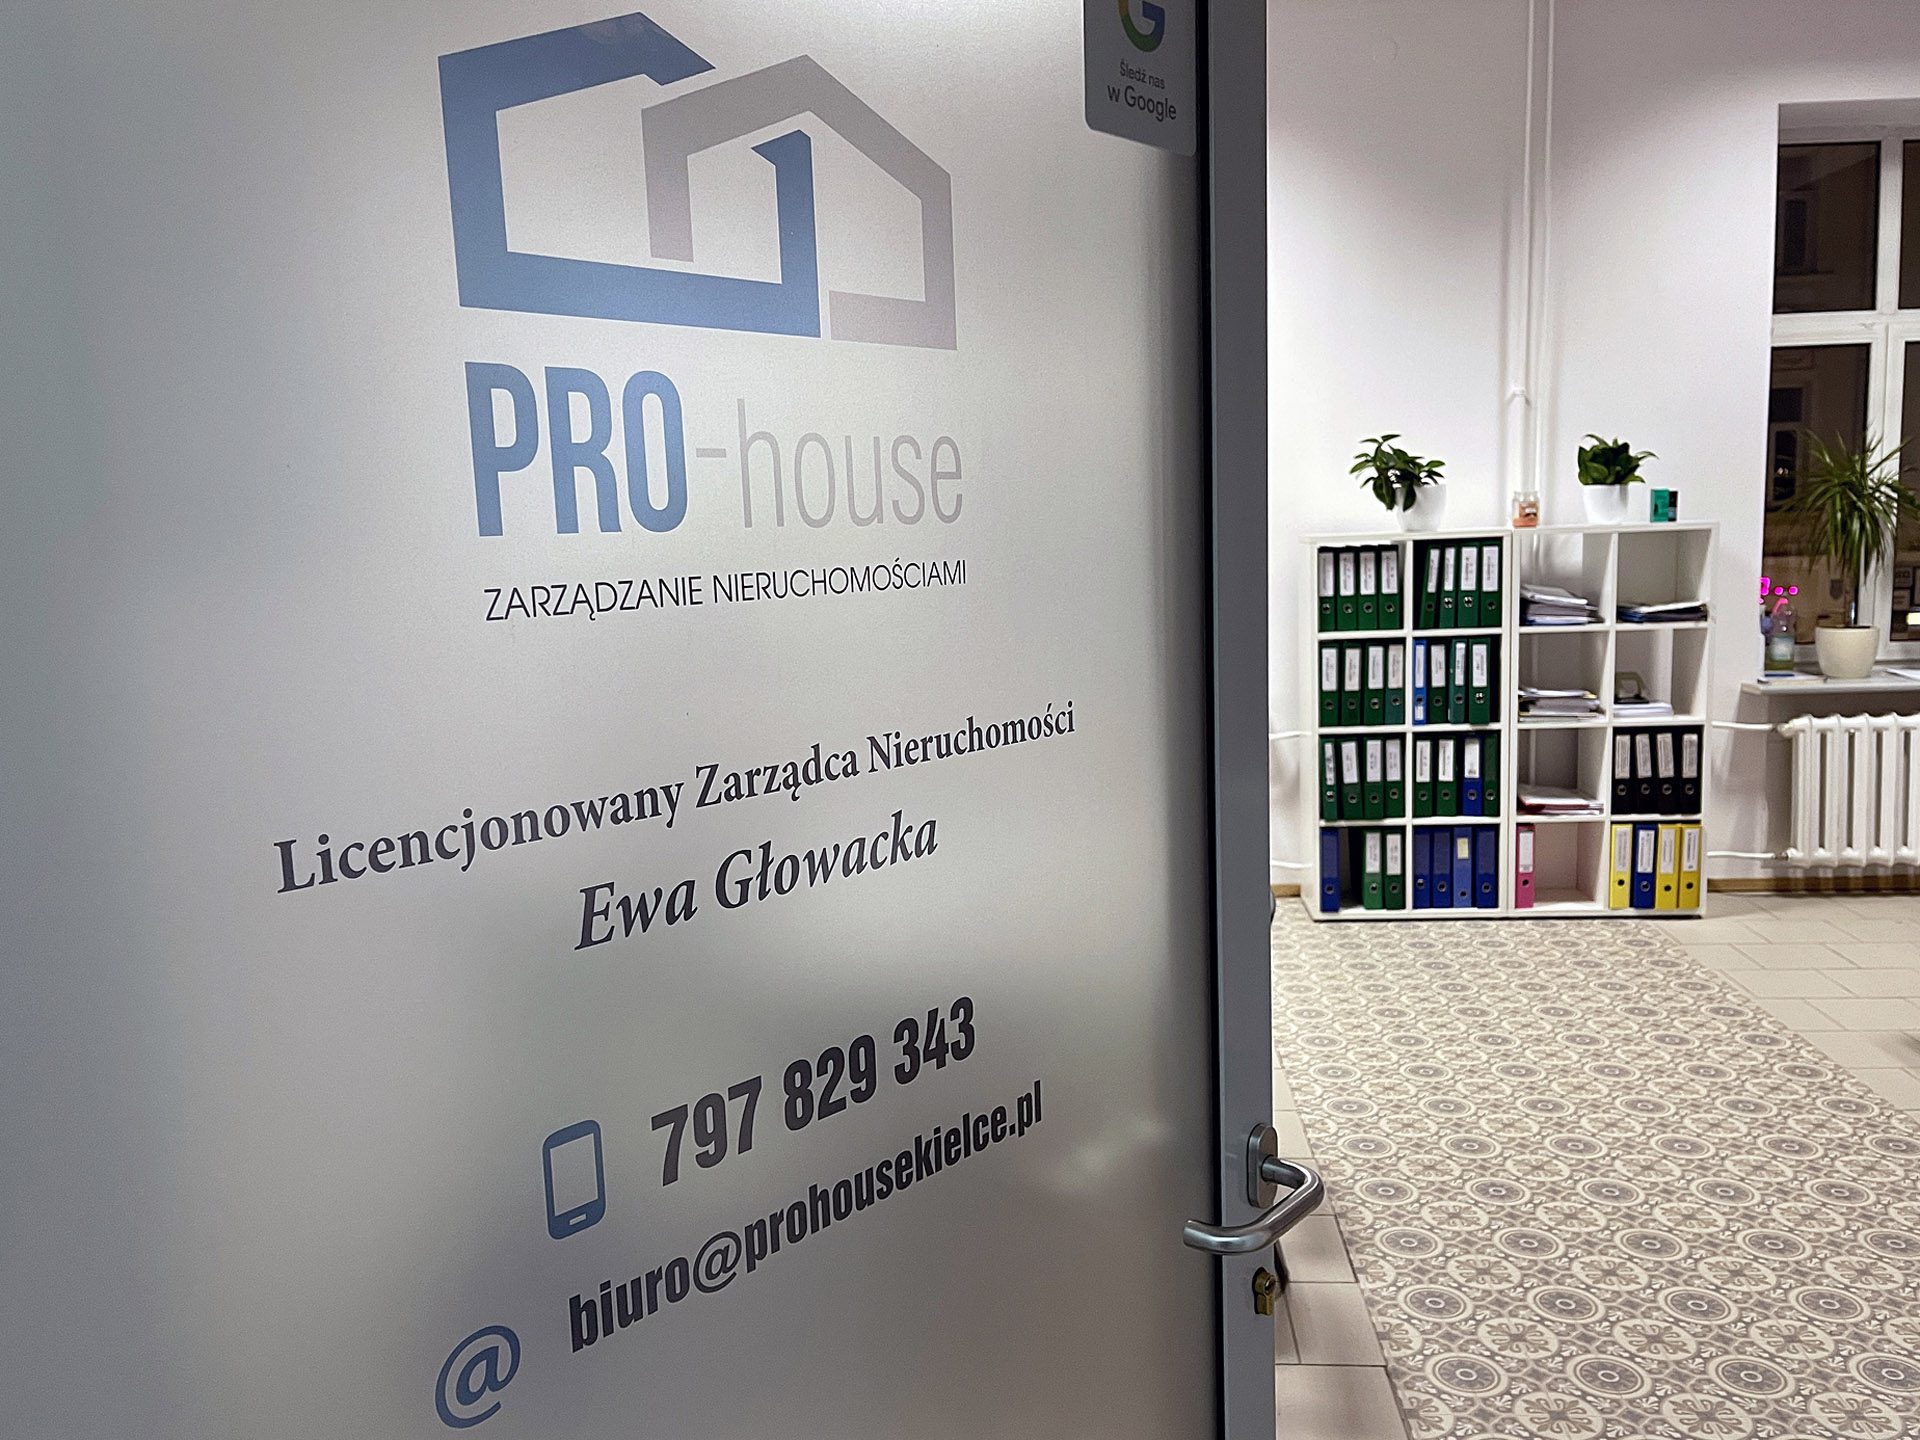 PRO-house Zarządzanie Nieruchomościami Kielce